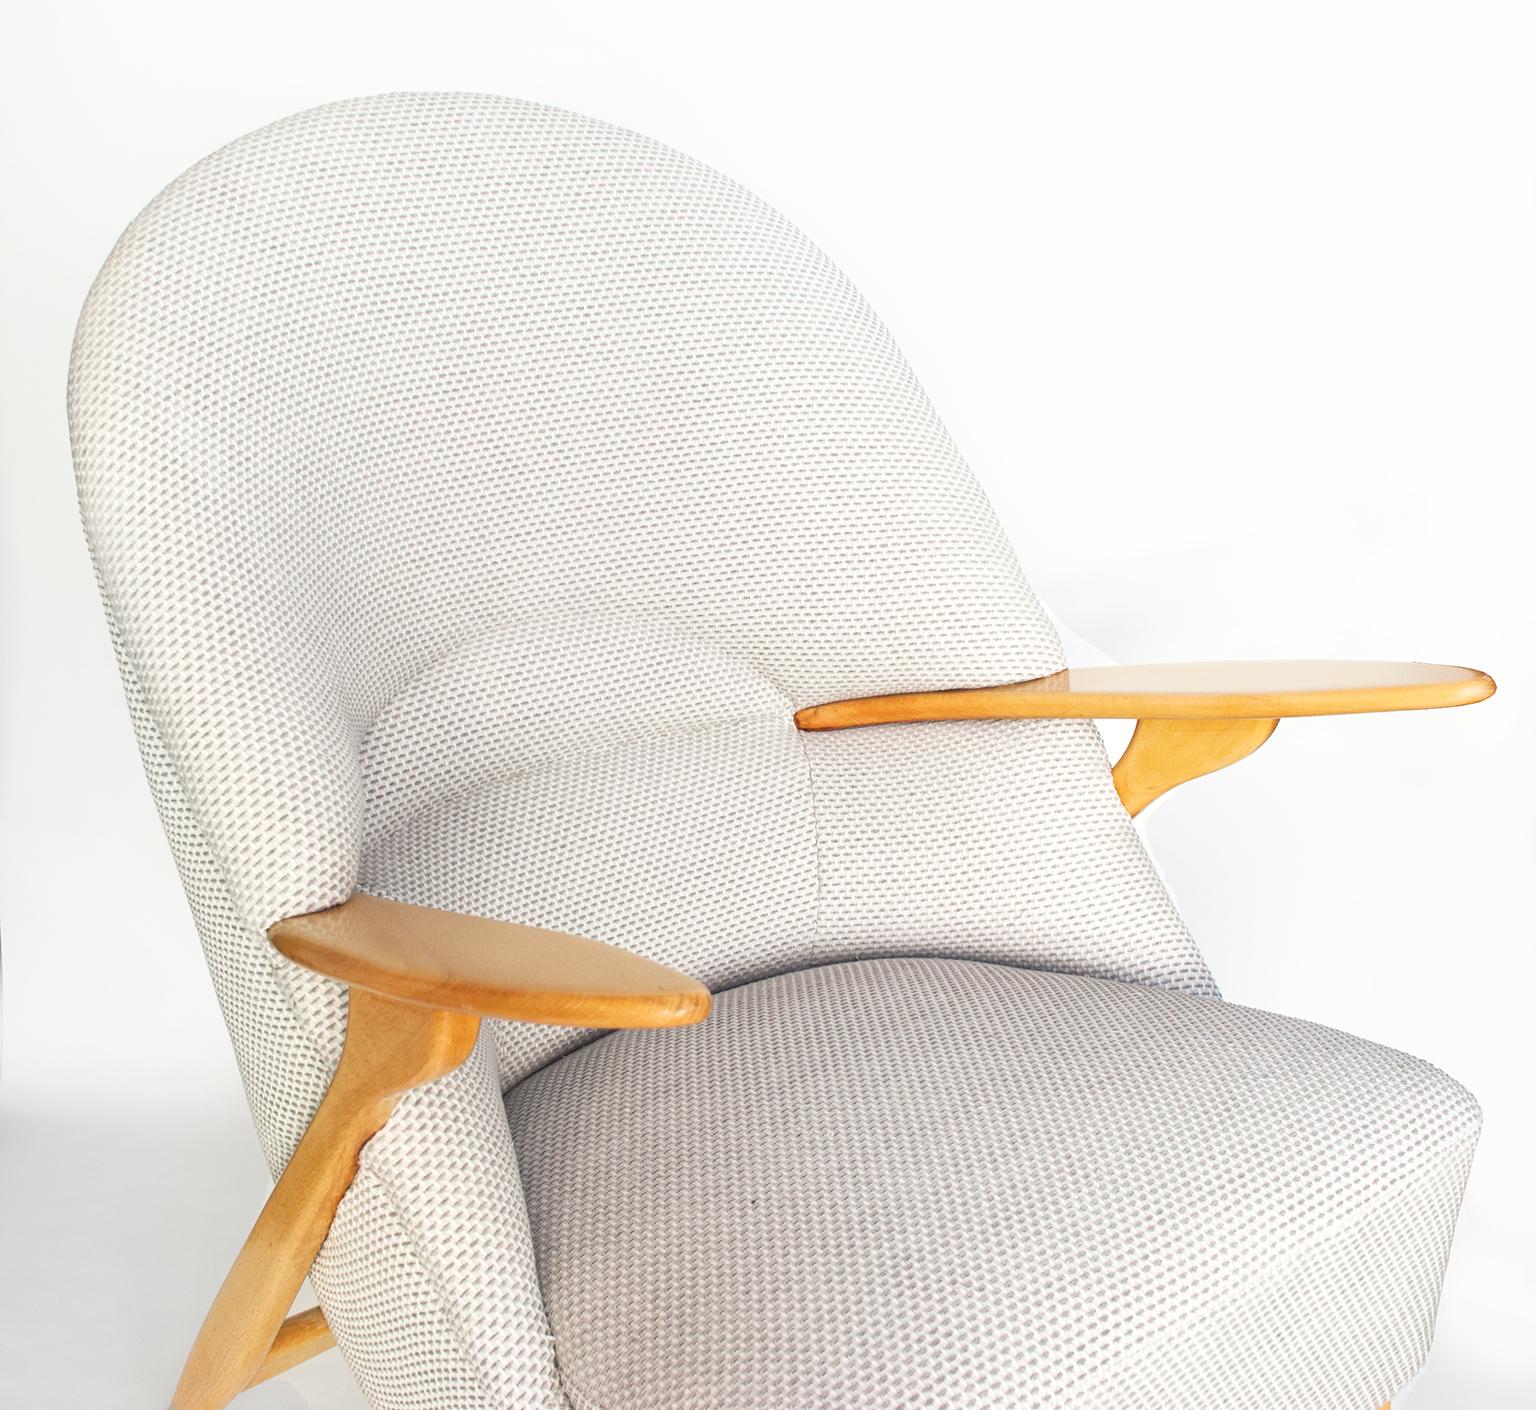 20th Century Svante Skogh Scandinavian Modern Lounge Chair by Säffle Möbelfabrik, Sweden For Sale